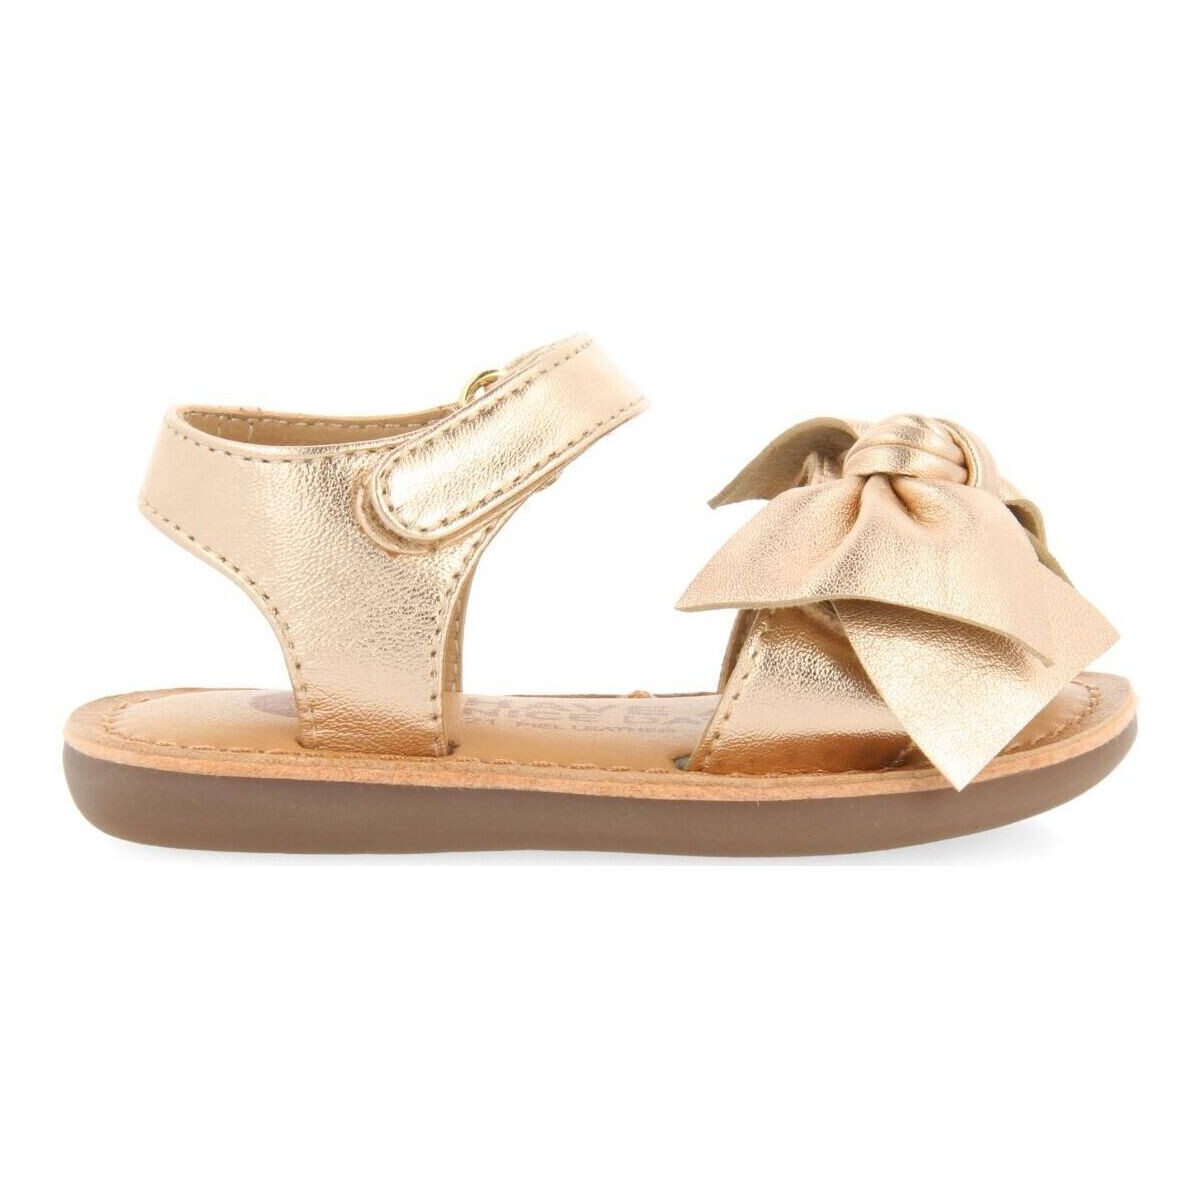 Schuhe Sandalen / Sandaletten Gioseppo ITALA Gold